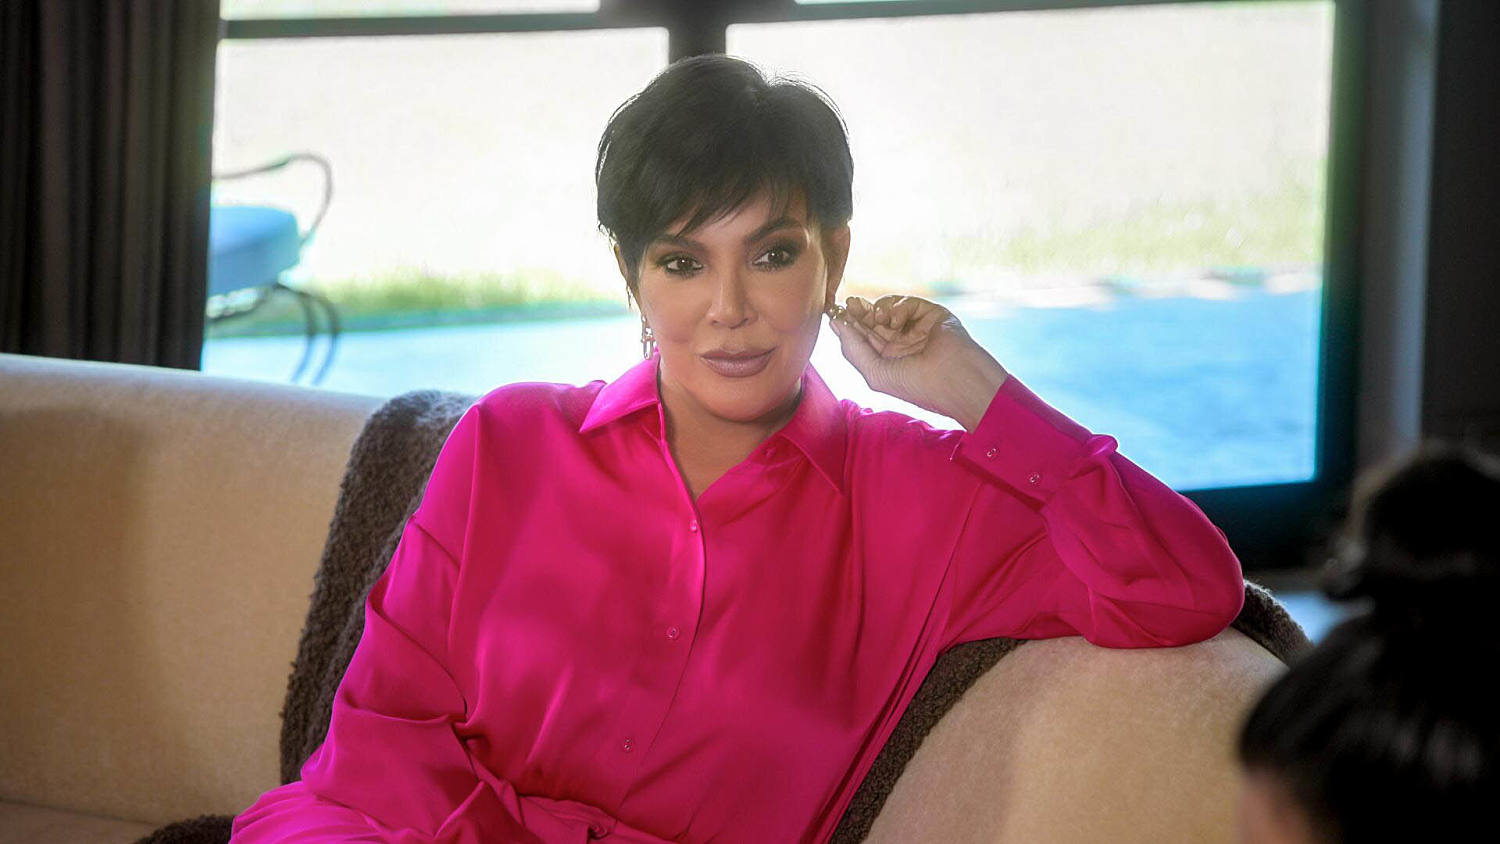 Kris Jenner reveals she has a tumor in new 'Kardashians' trailer